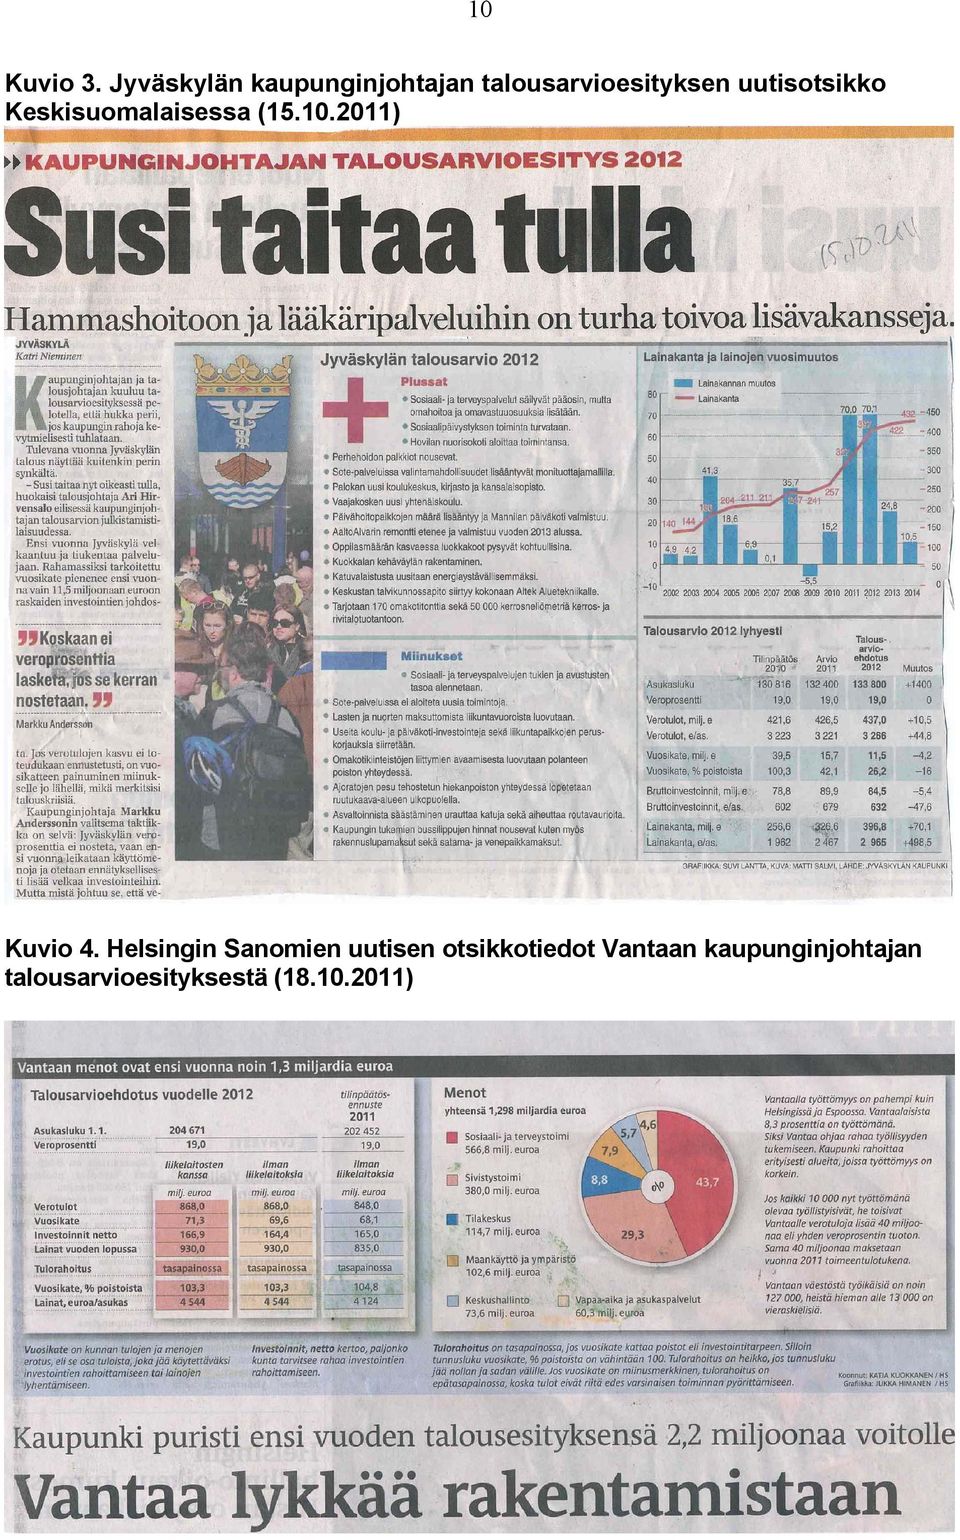 uutisotsikko Keskisuomalaisessa (15.10.2011) Kuvio 4.